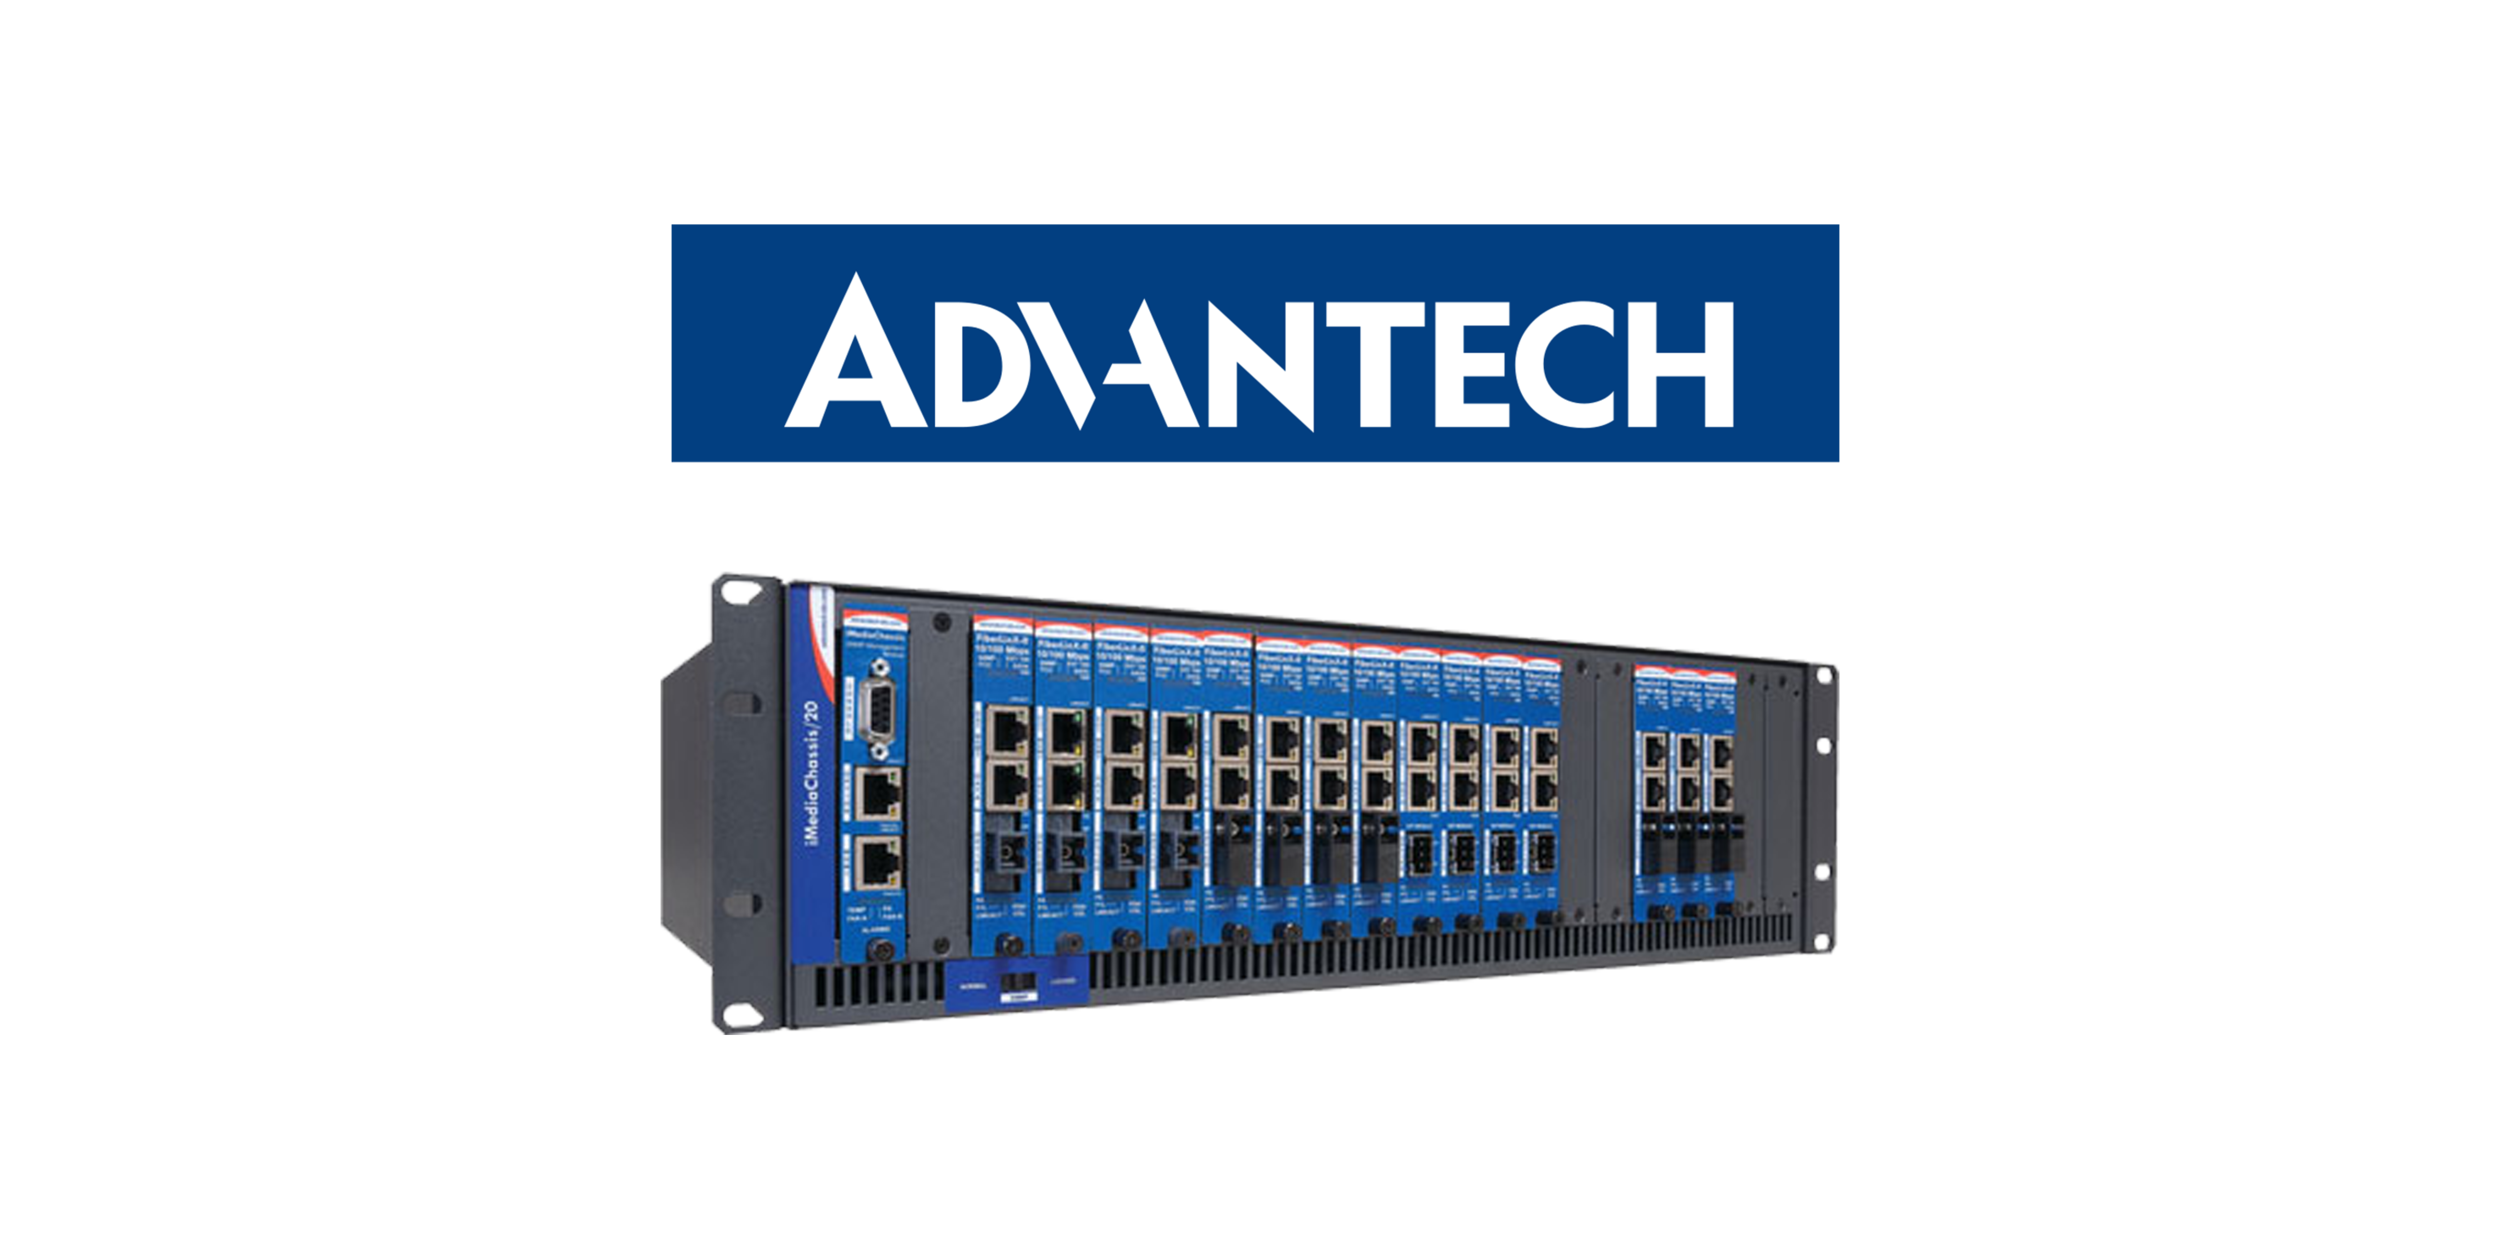 Advantech propose une gamme complète de solutions de connectivité industrielle pour tout type de réseau